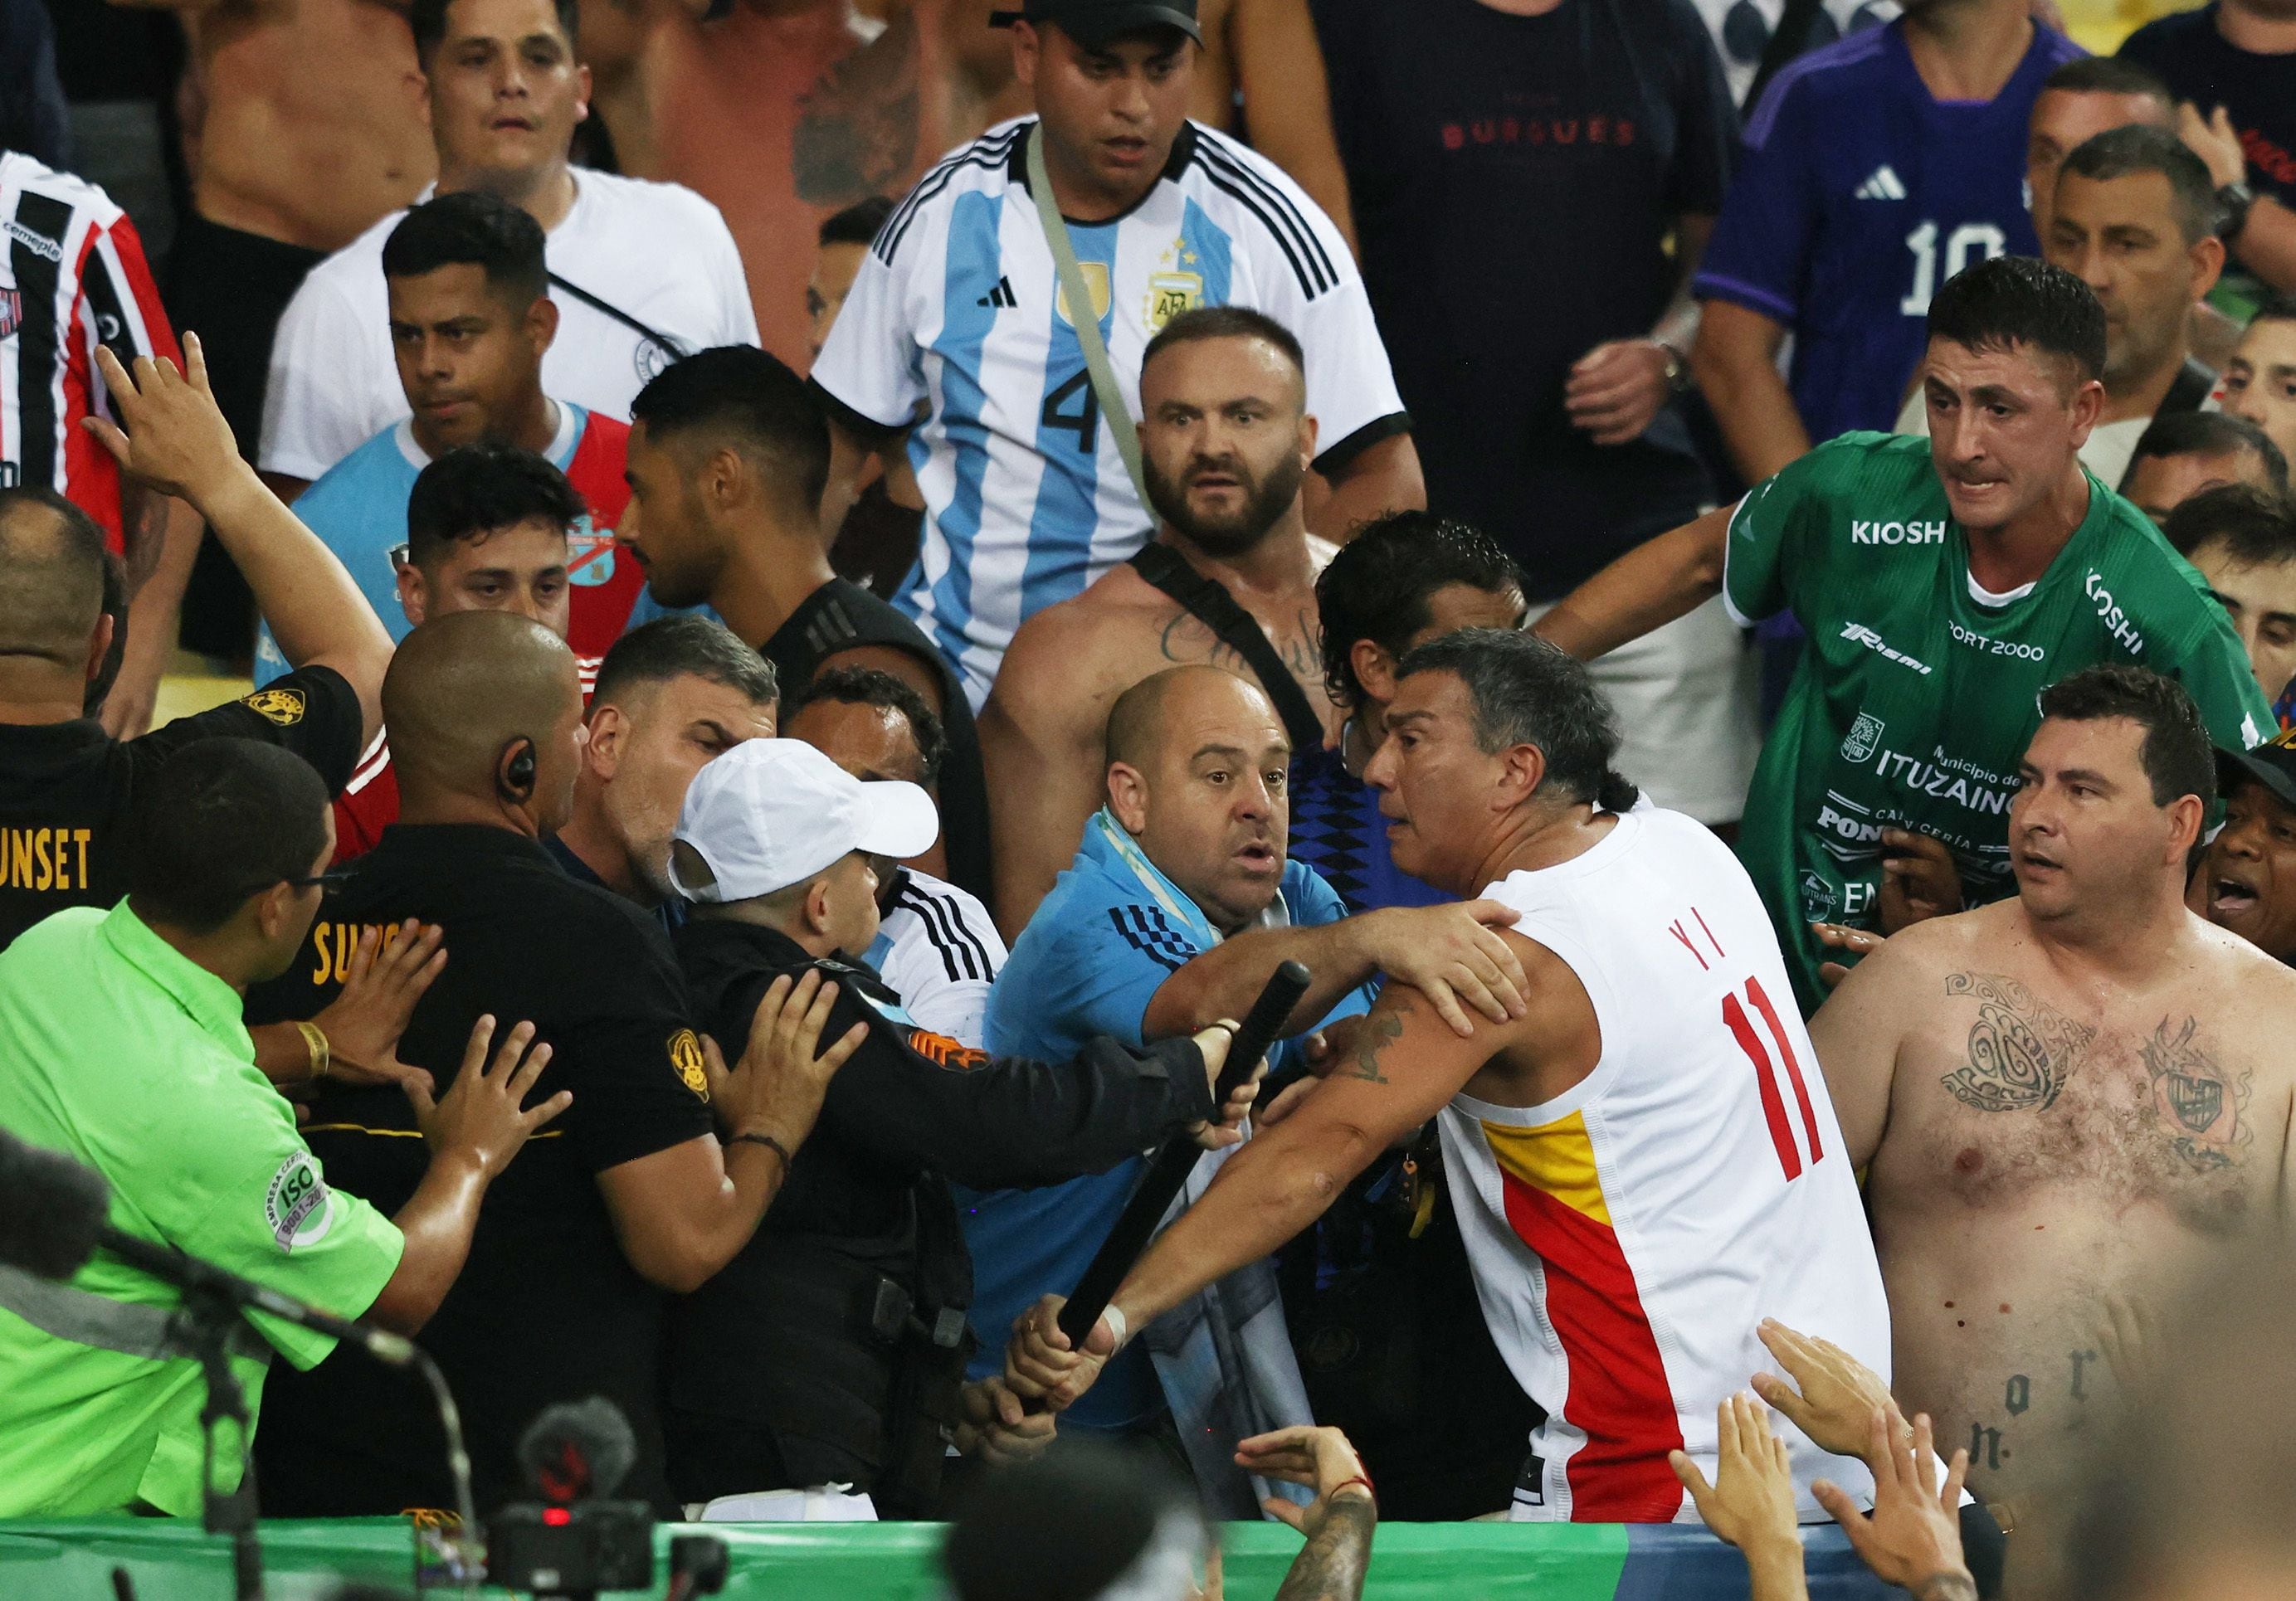 El Patovica de la Selección, de barba, en cuero y con una riñonera cruzada (REUTERS/Sergio Moraes)